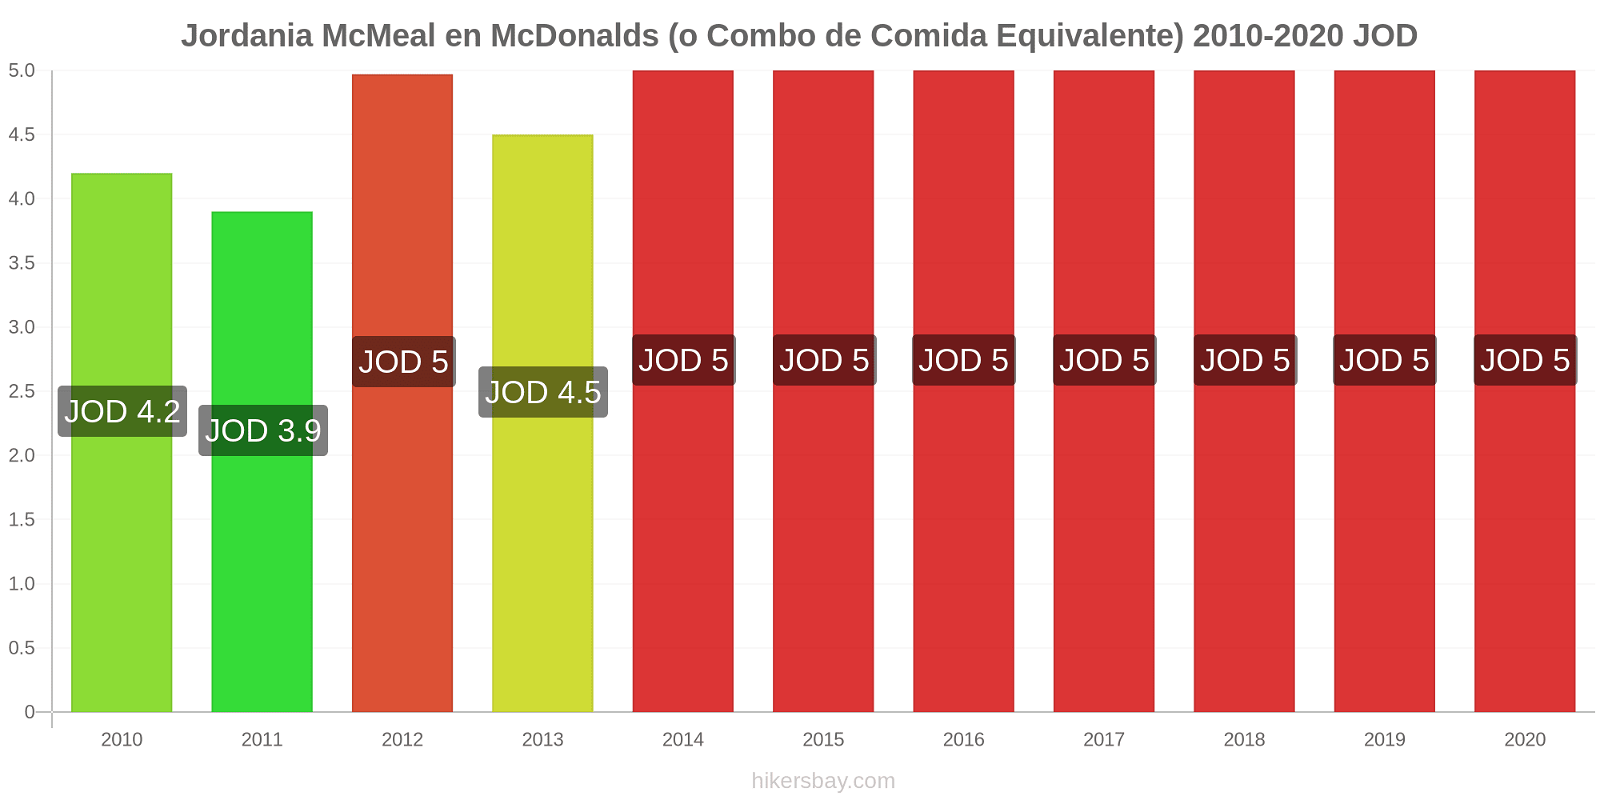 Jordania cambios de precios McMeal en McDonalds (o menú equivalente) hikersbay.com